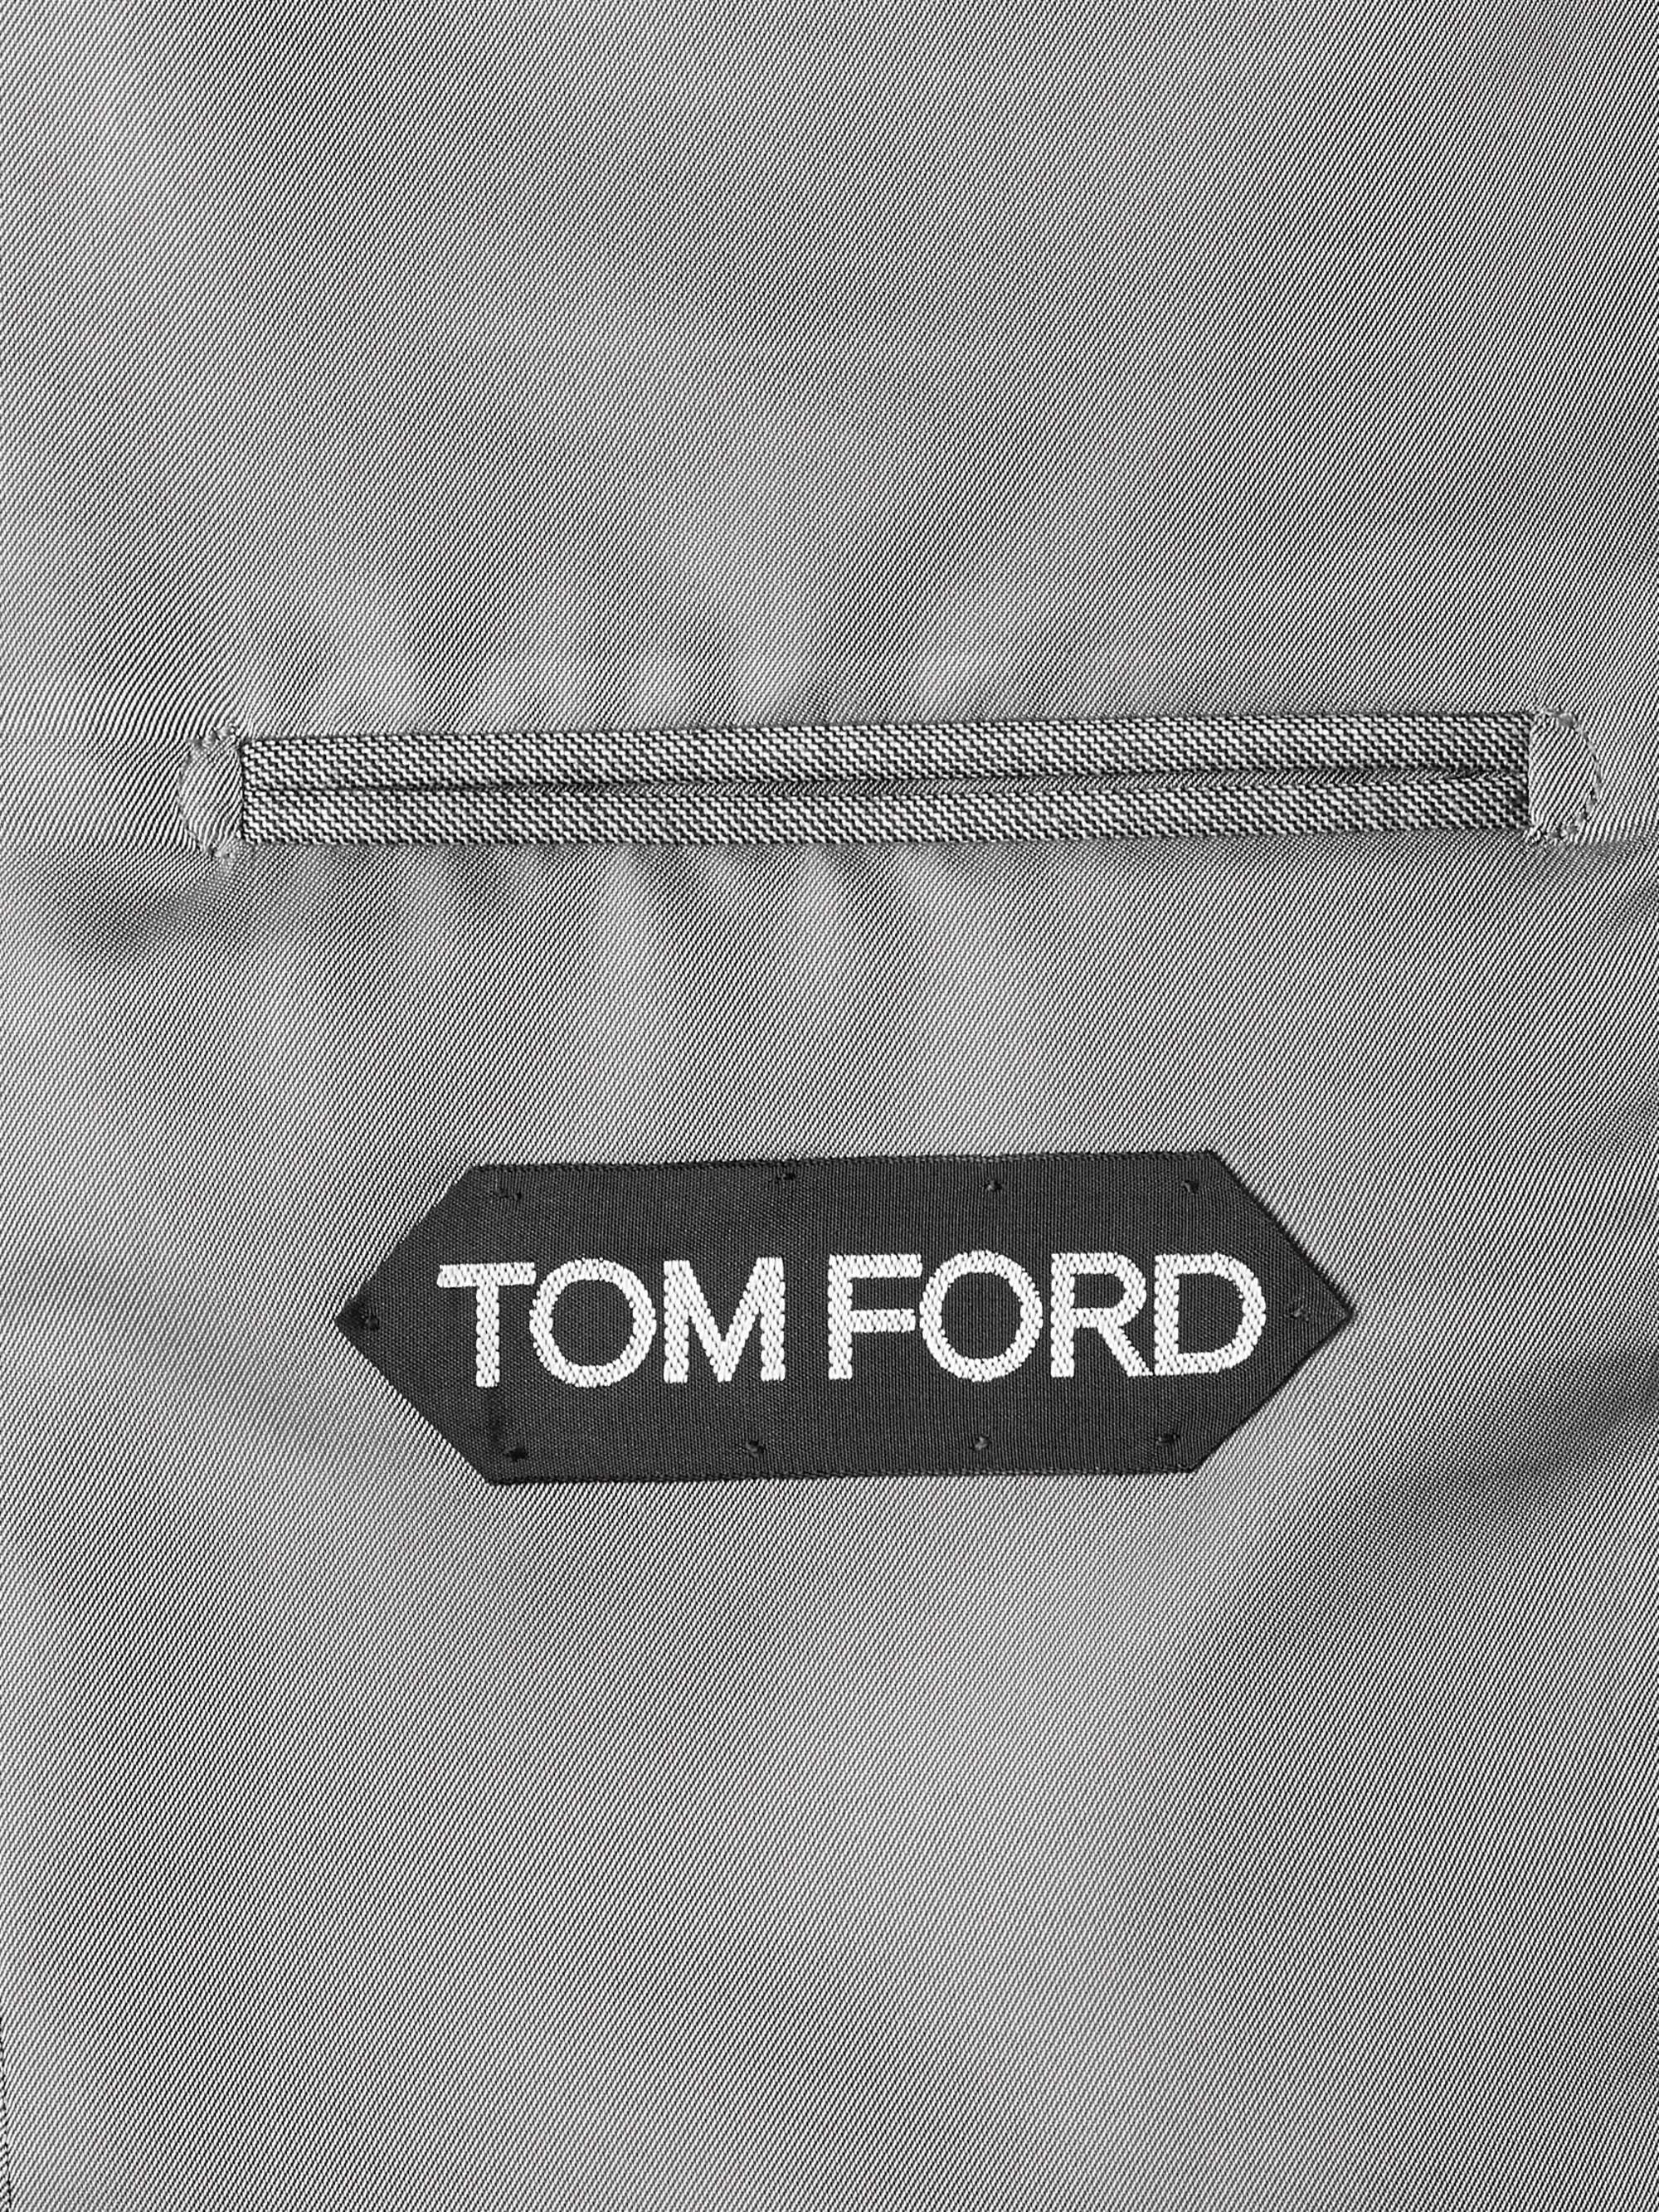 TOM FORD O'Connor Slim-Fit Super 110s Sharkskin Wool Suit Jacket